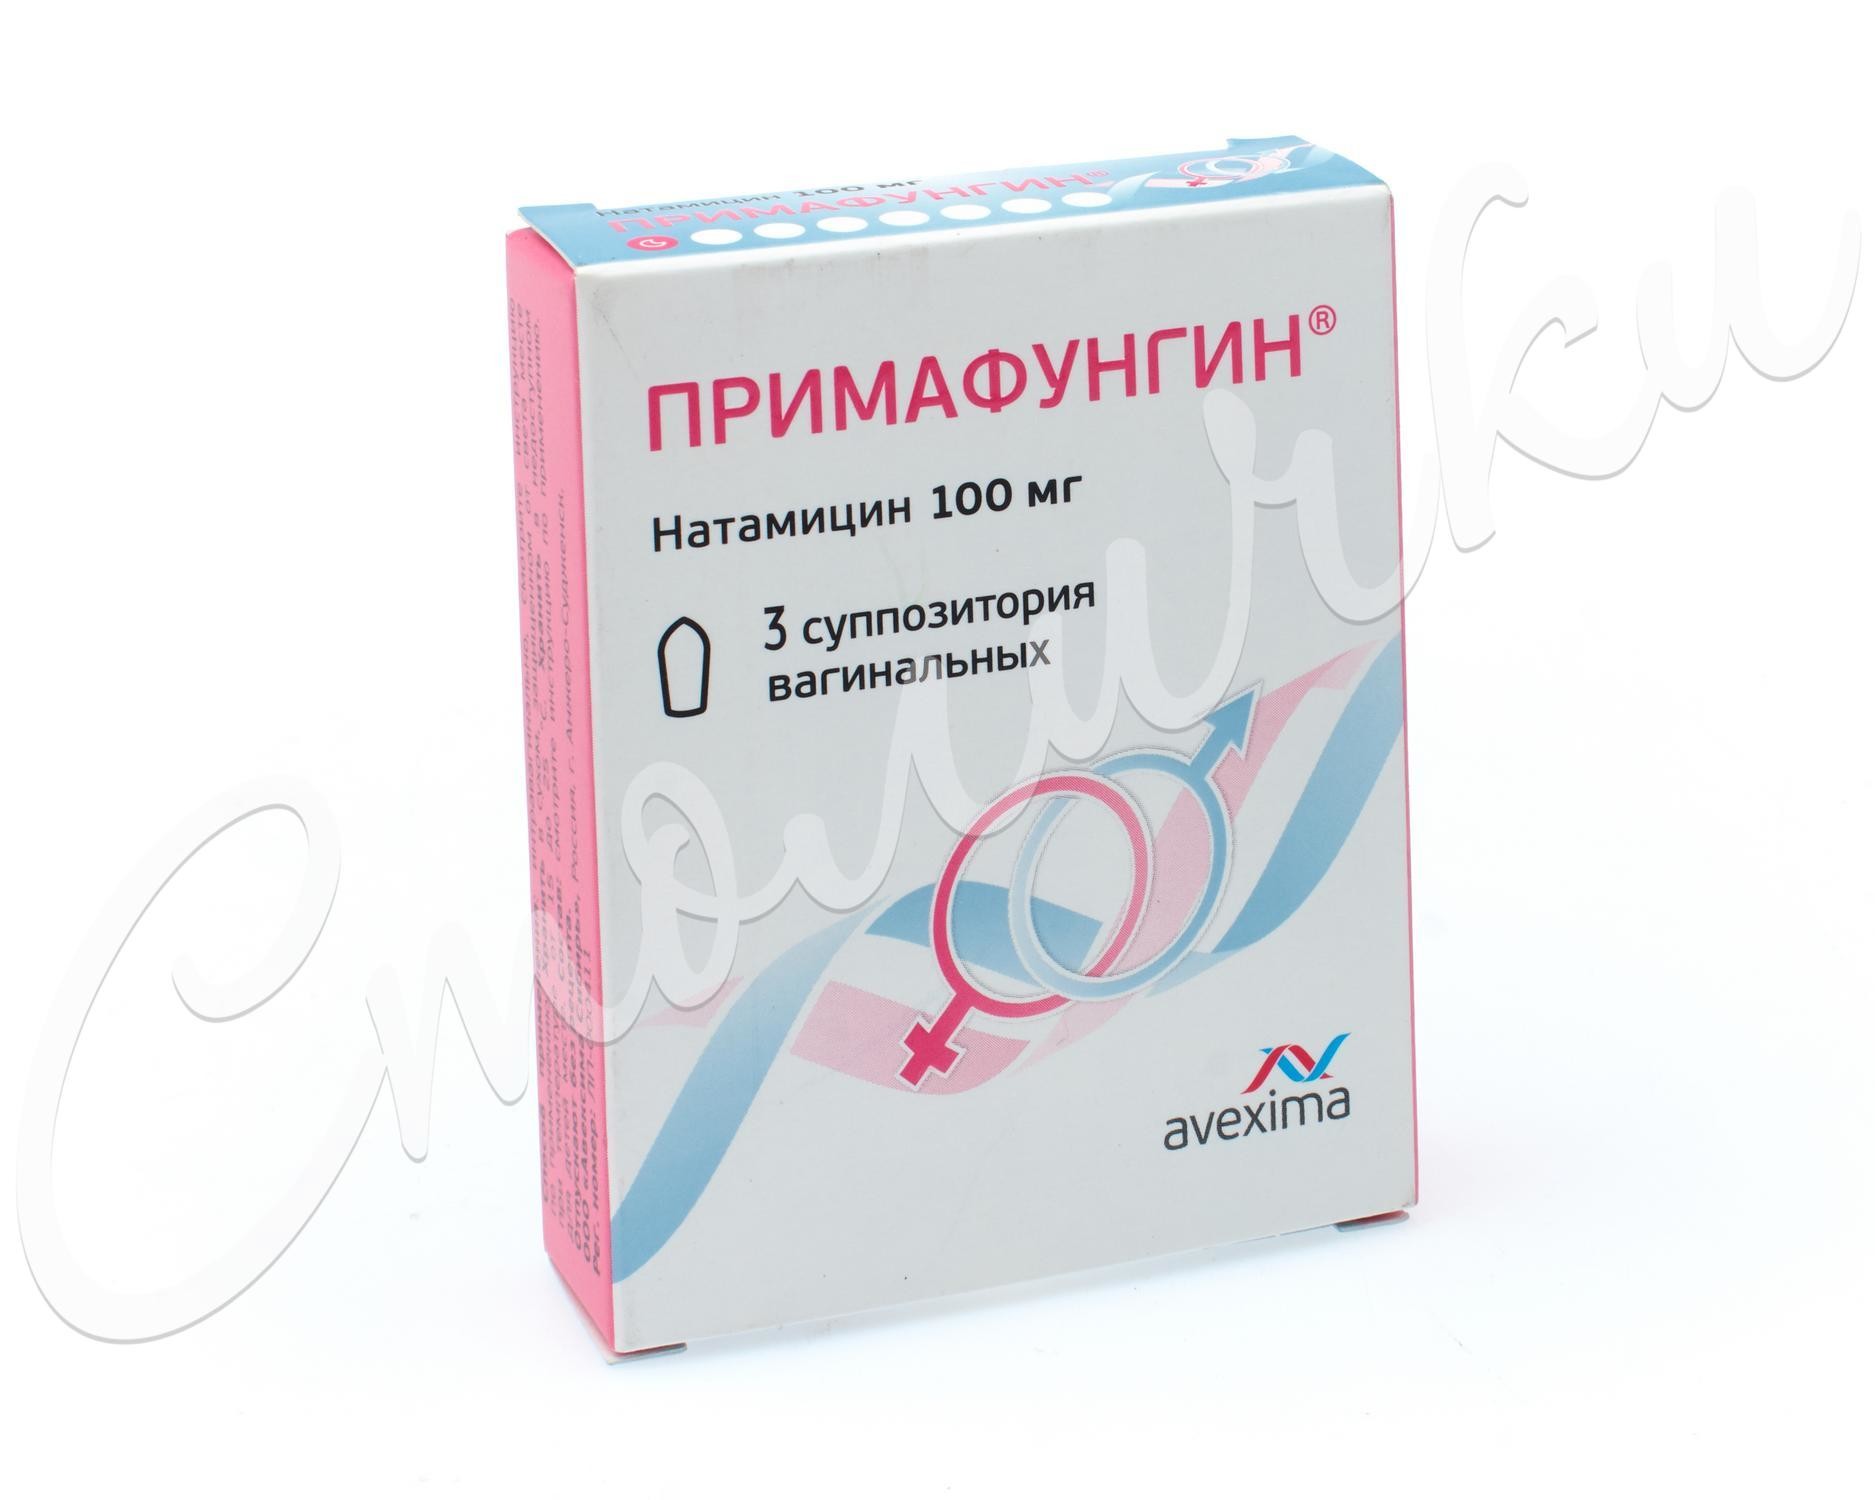 Примафунгин суппозитории вагинальные 100мг №3   по цене .